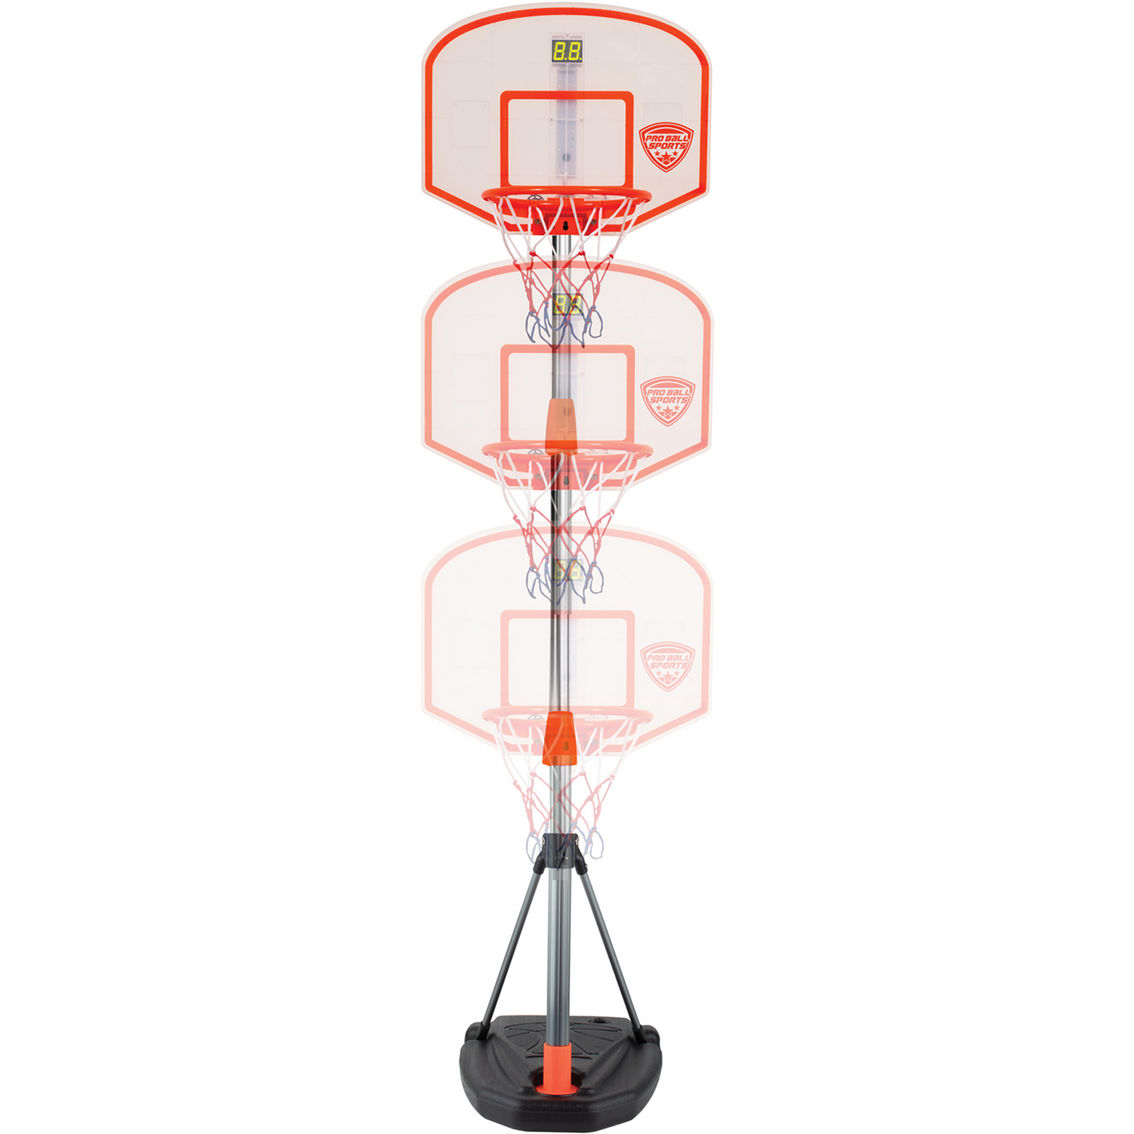 Pro Ball: Portable Basketball Game - Image 3 of 7